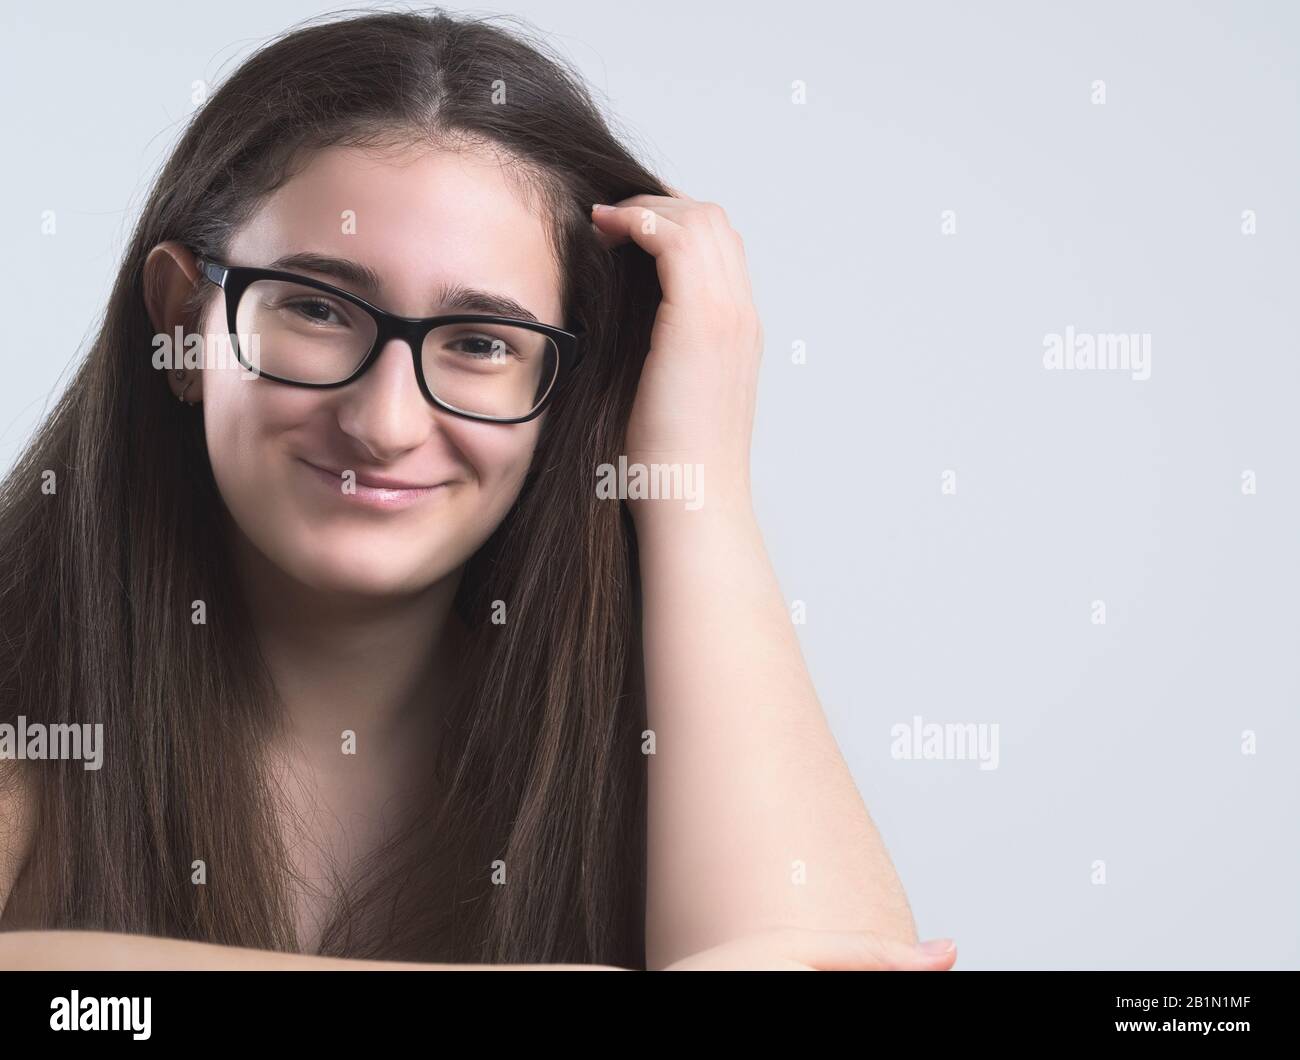 Ritratto di una Sorridente Brunette Teen Girl dai capelli lunghi Bespectacled Foto Stock